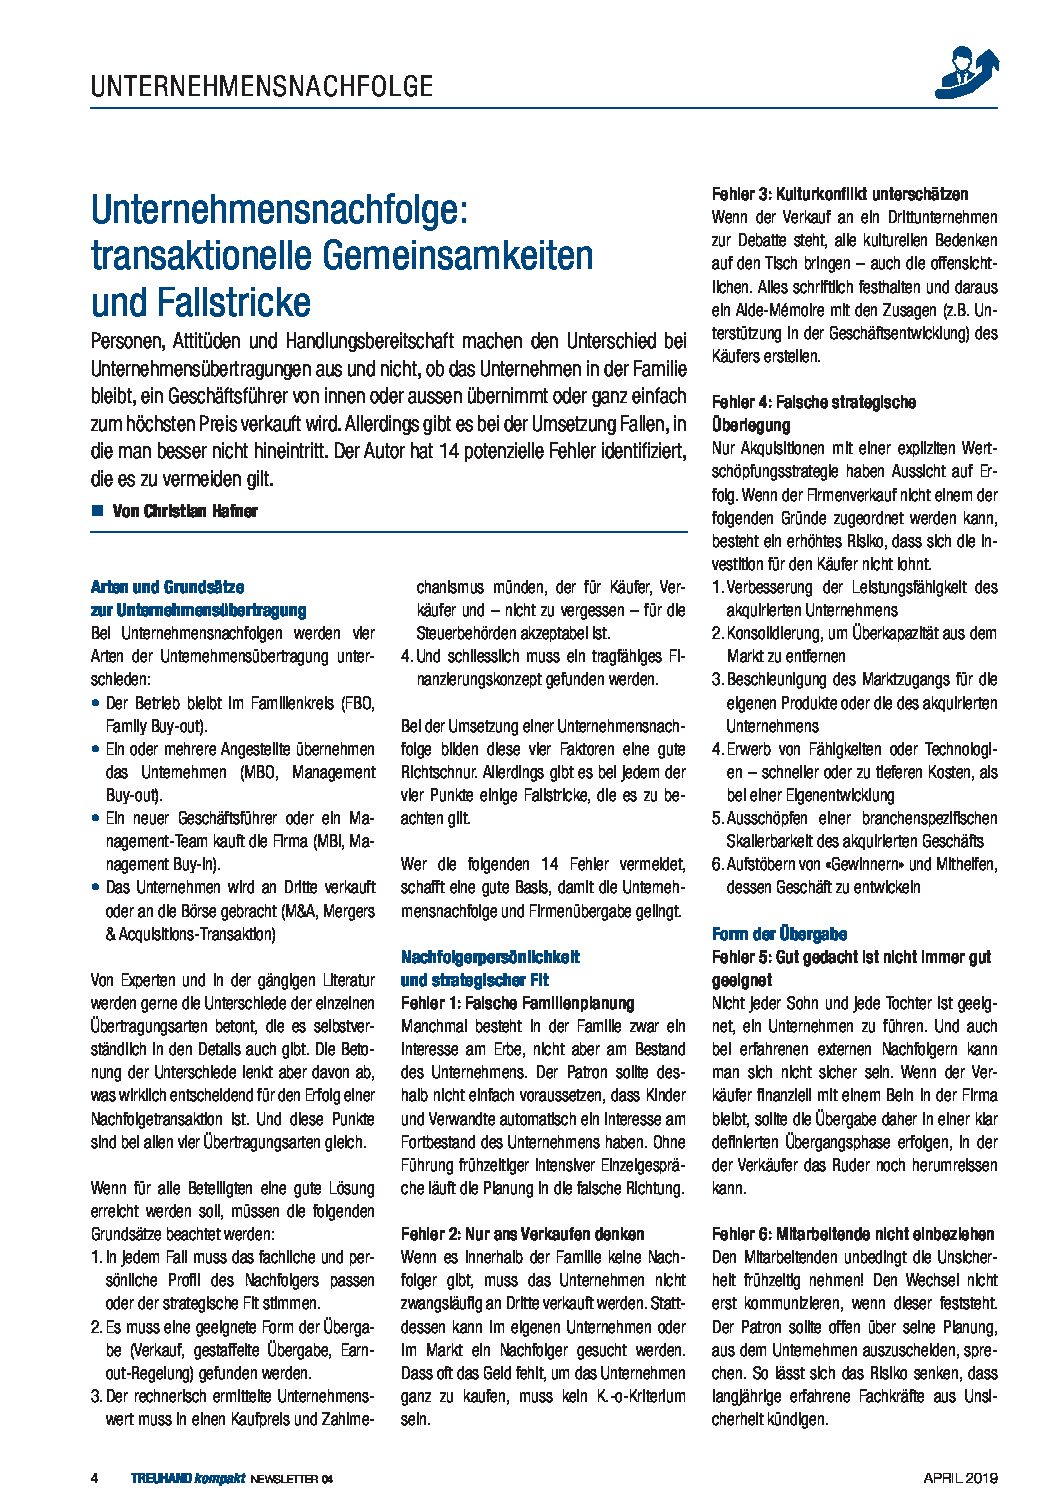 Unternehmensnachfolge_transaktionelle-Gemeinsamkeiten-und-Fallstricke-April19.pdf